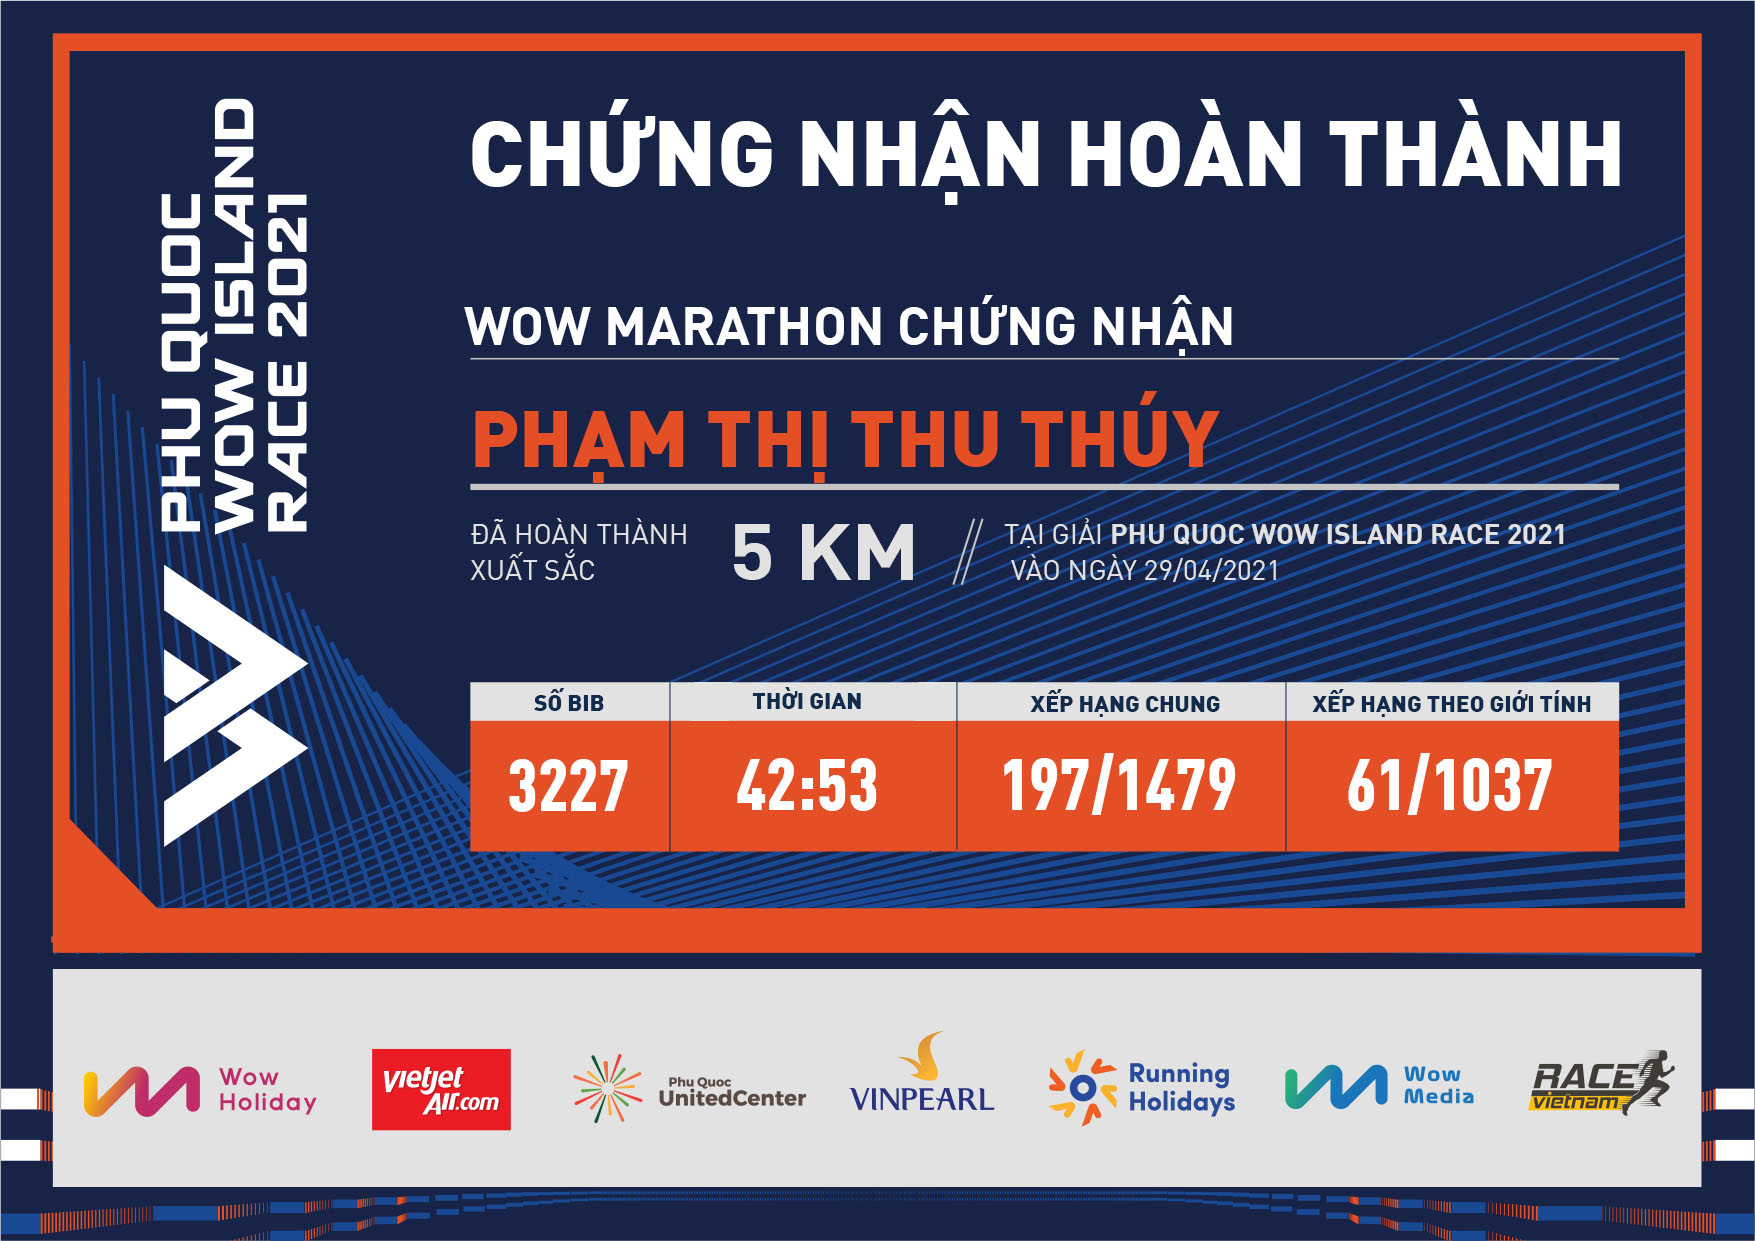 3227 - Phạm Thị Thu Thúy